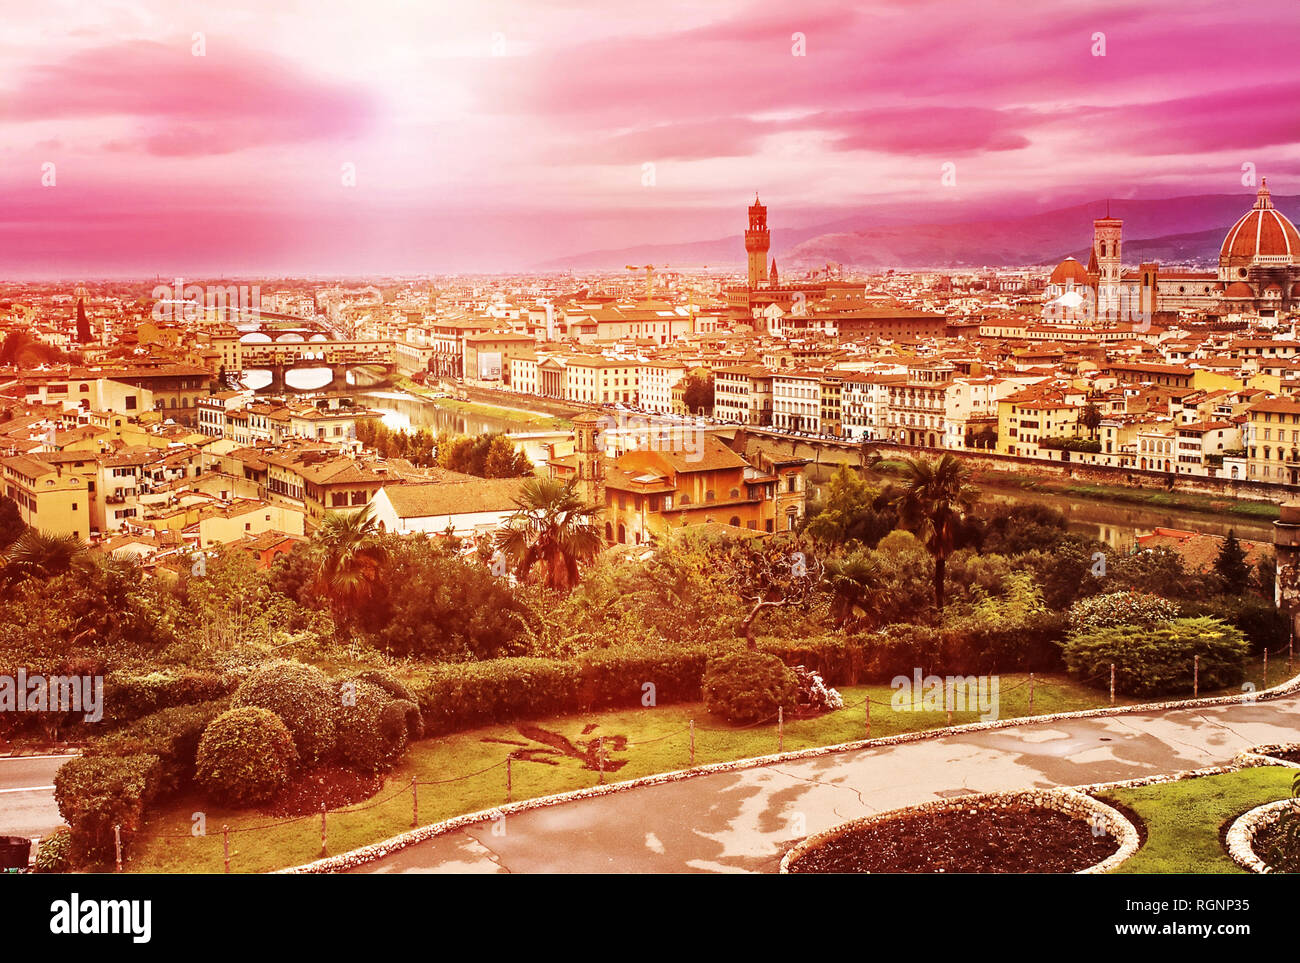 Vue aérienne du centre historique de Florence, l'Italie pendant le coucher du soleil Banque D'Images